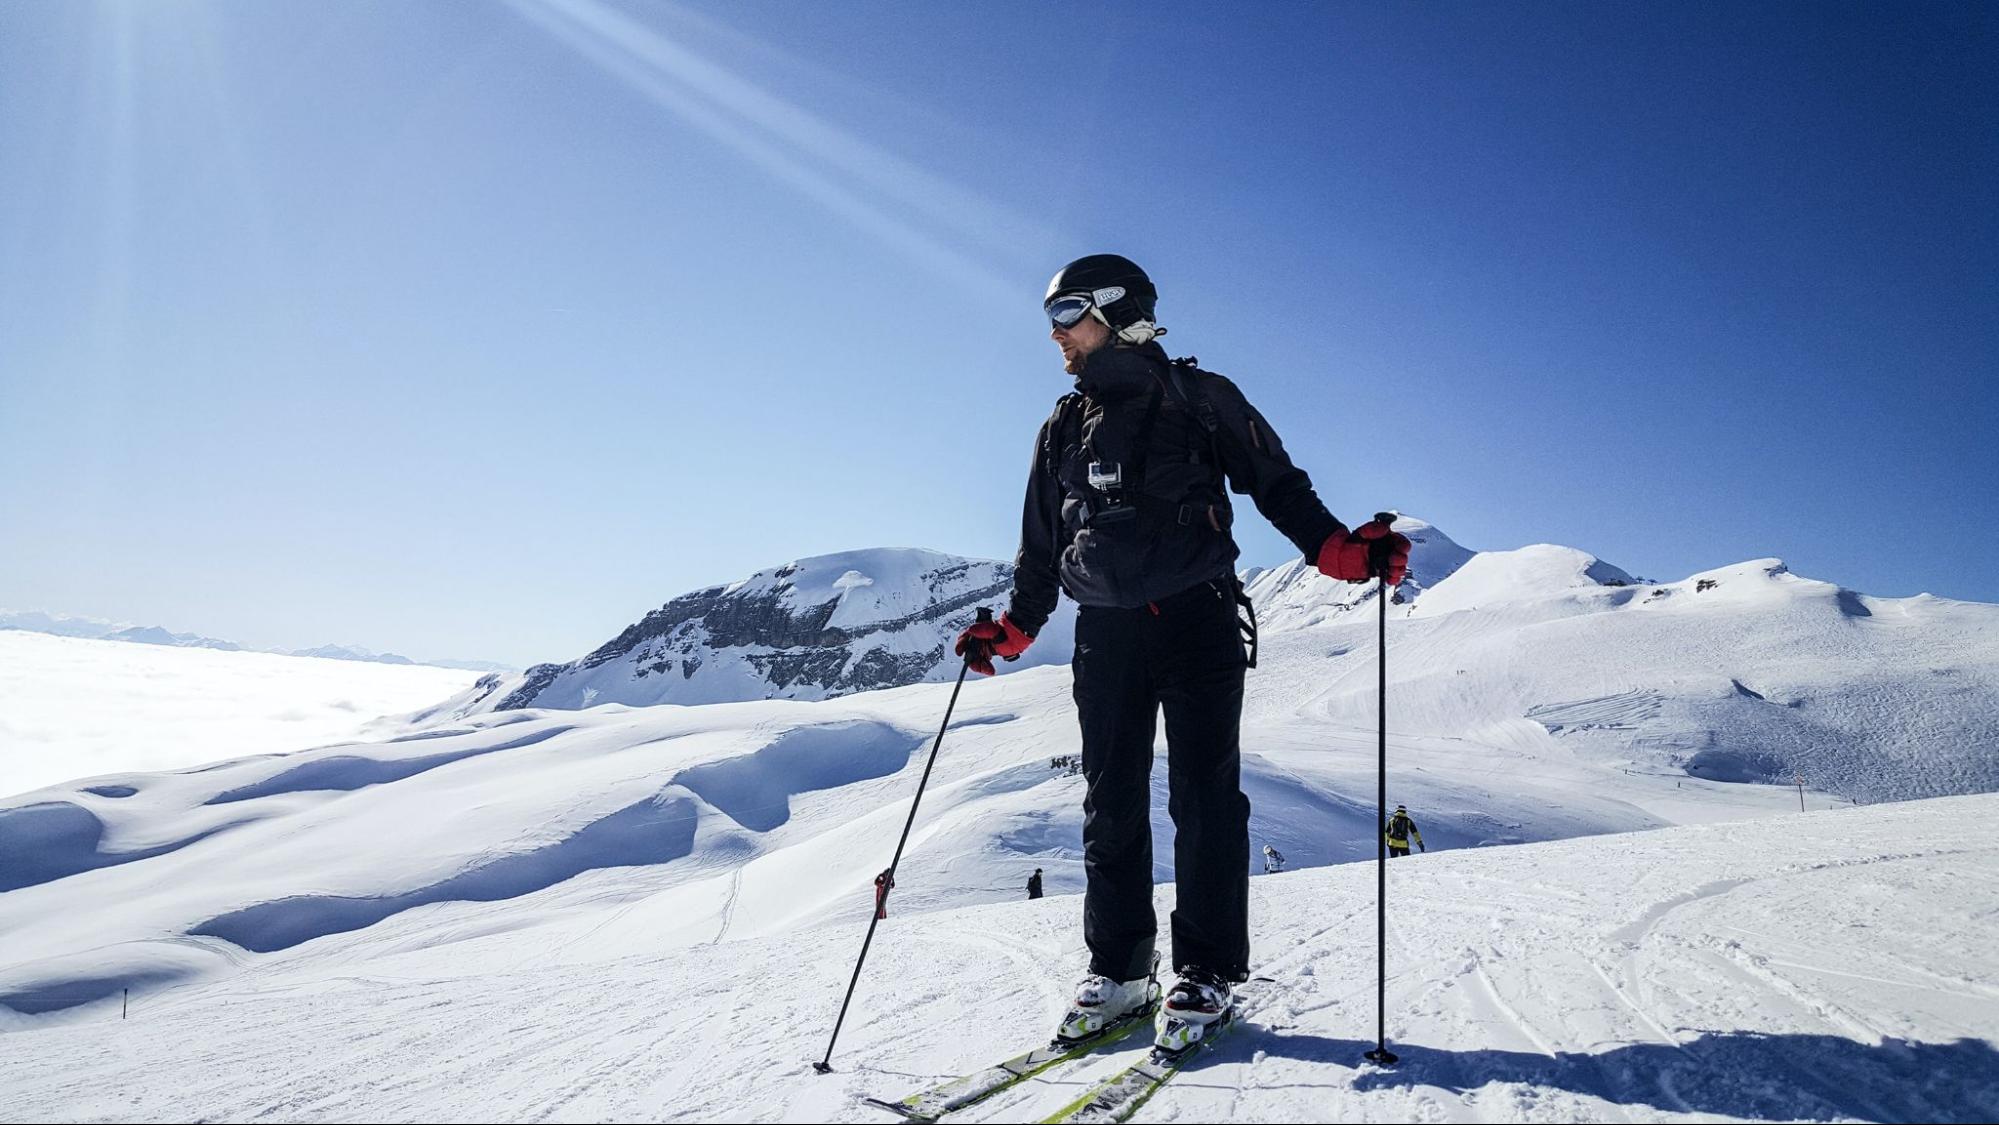 Tips for beginner skiers